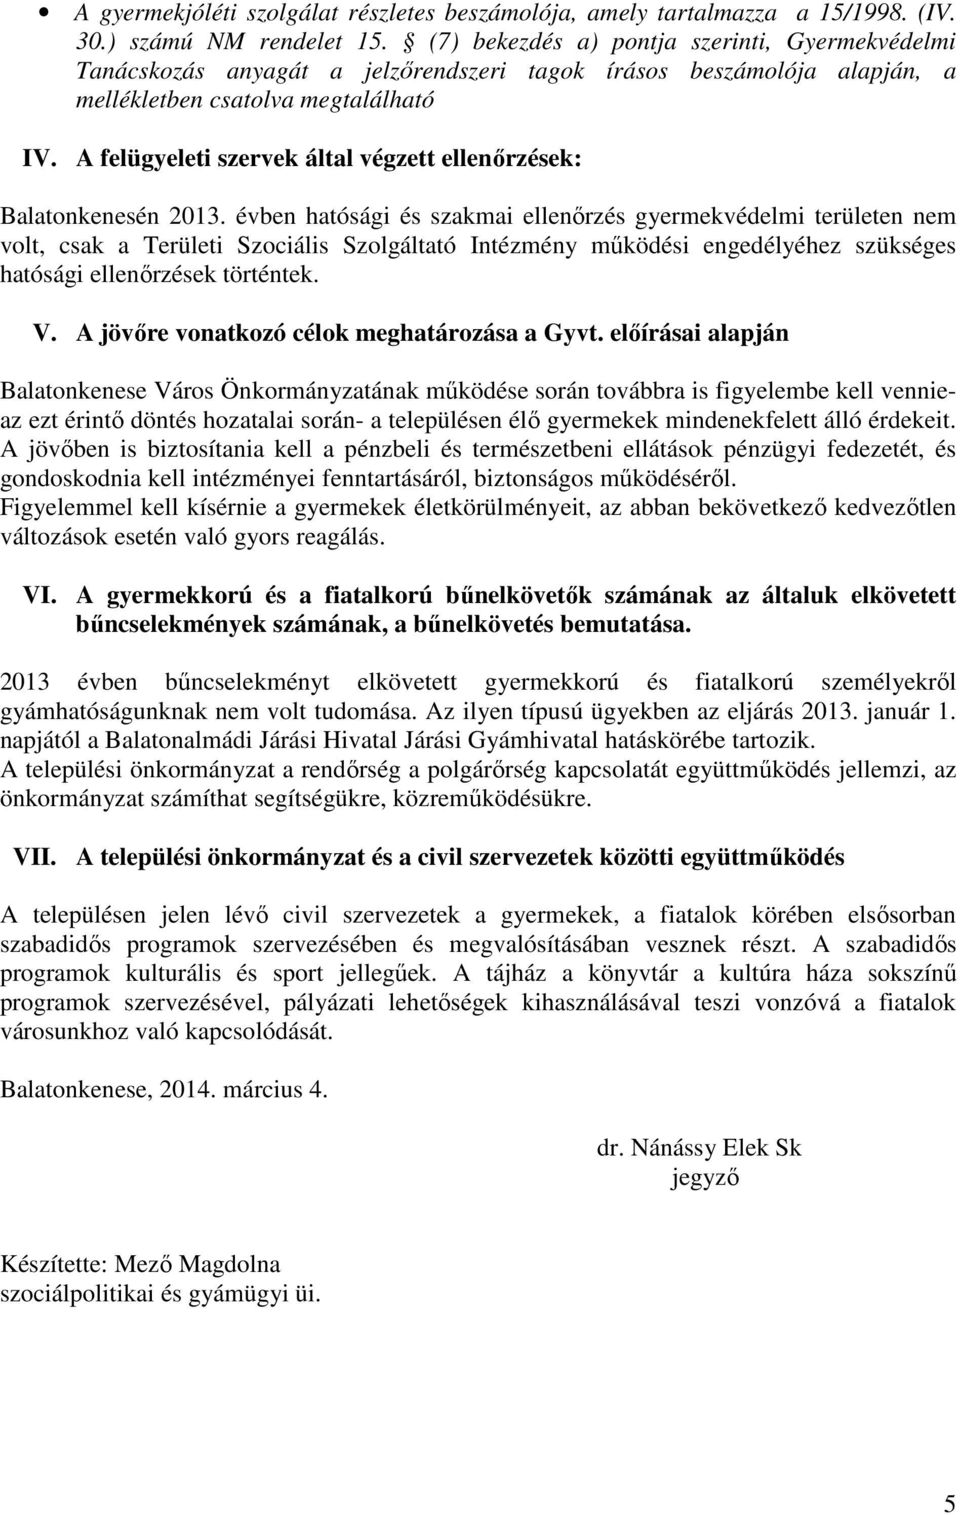 A felügyeleti szervek által végzett ellenőrzések: Balatonkenesén 2013.